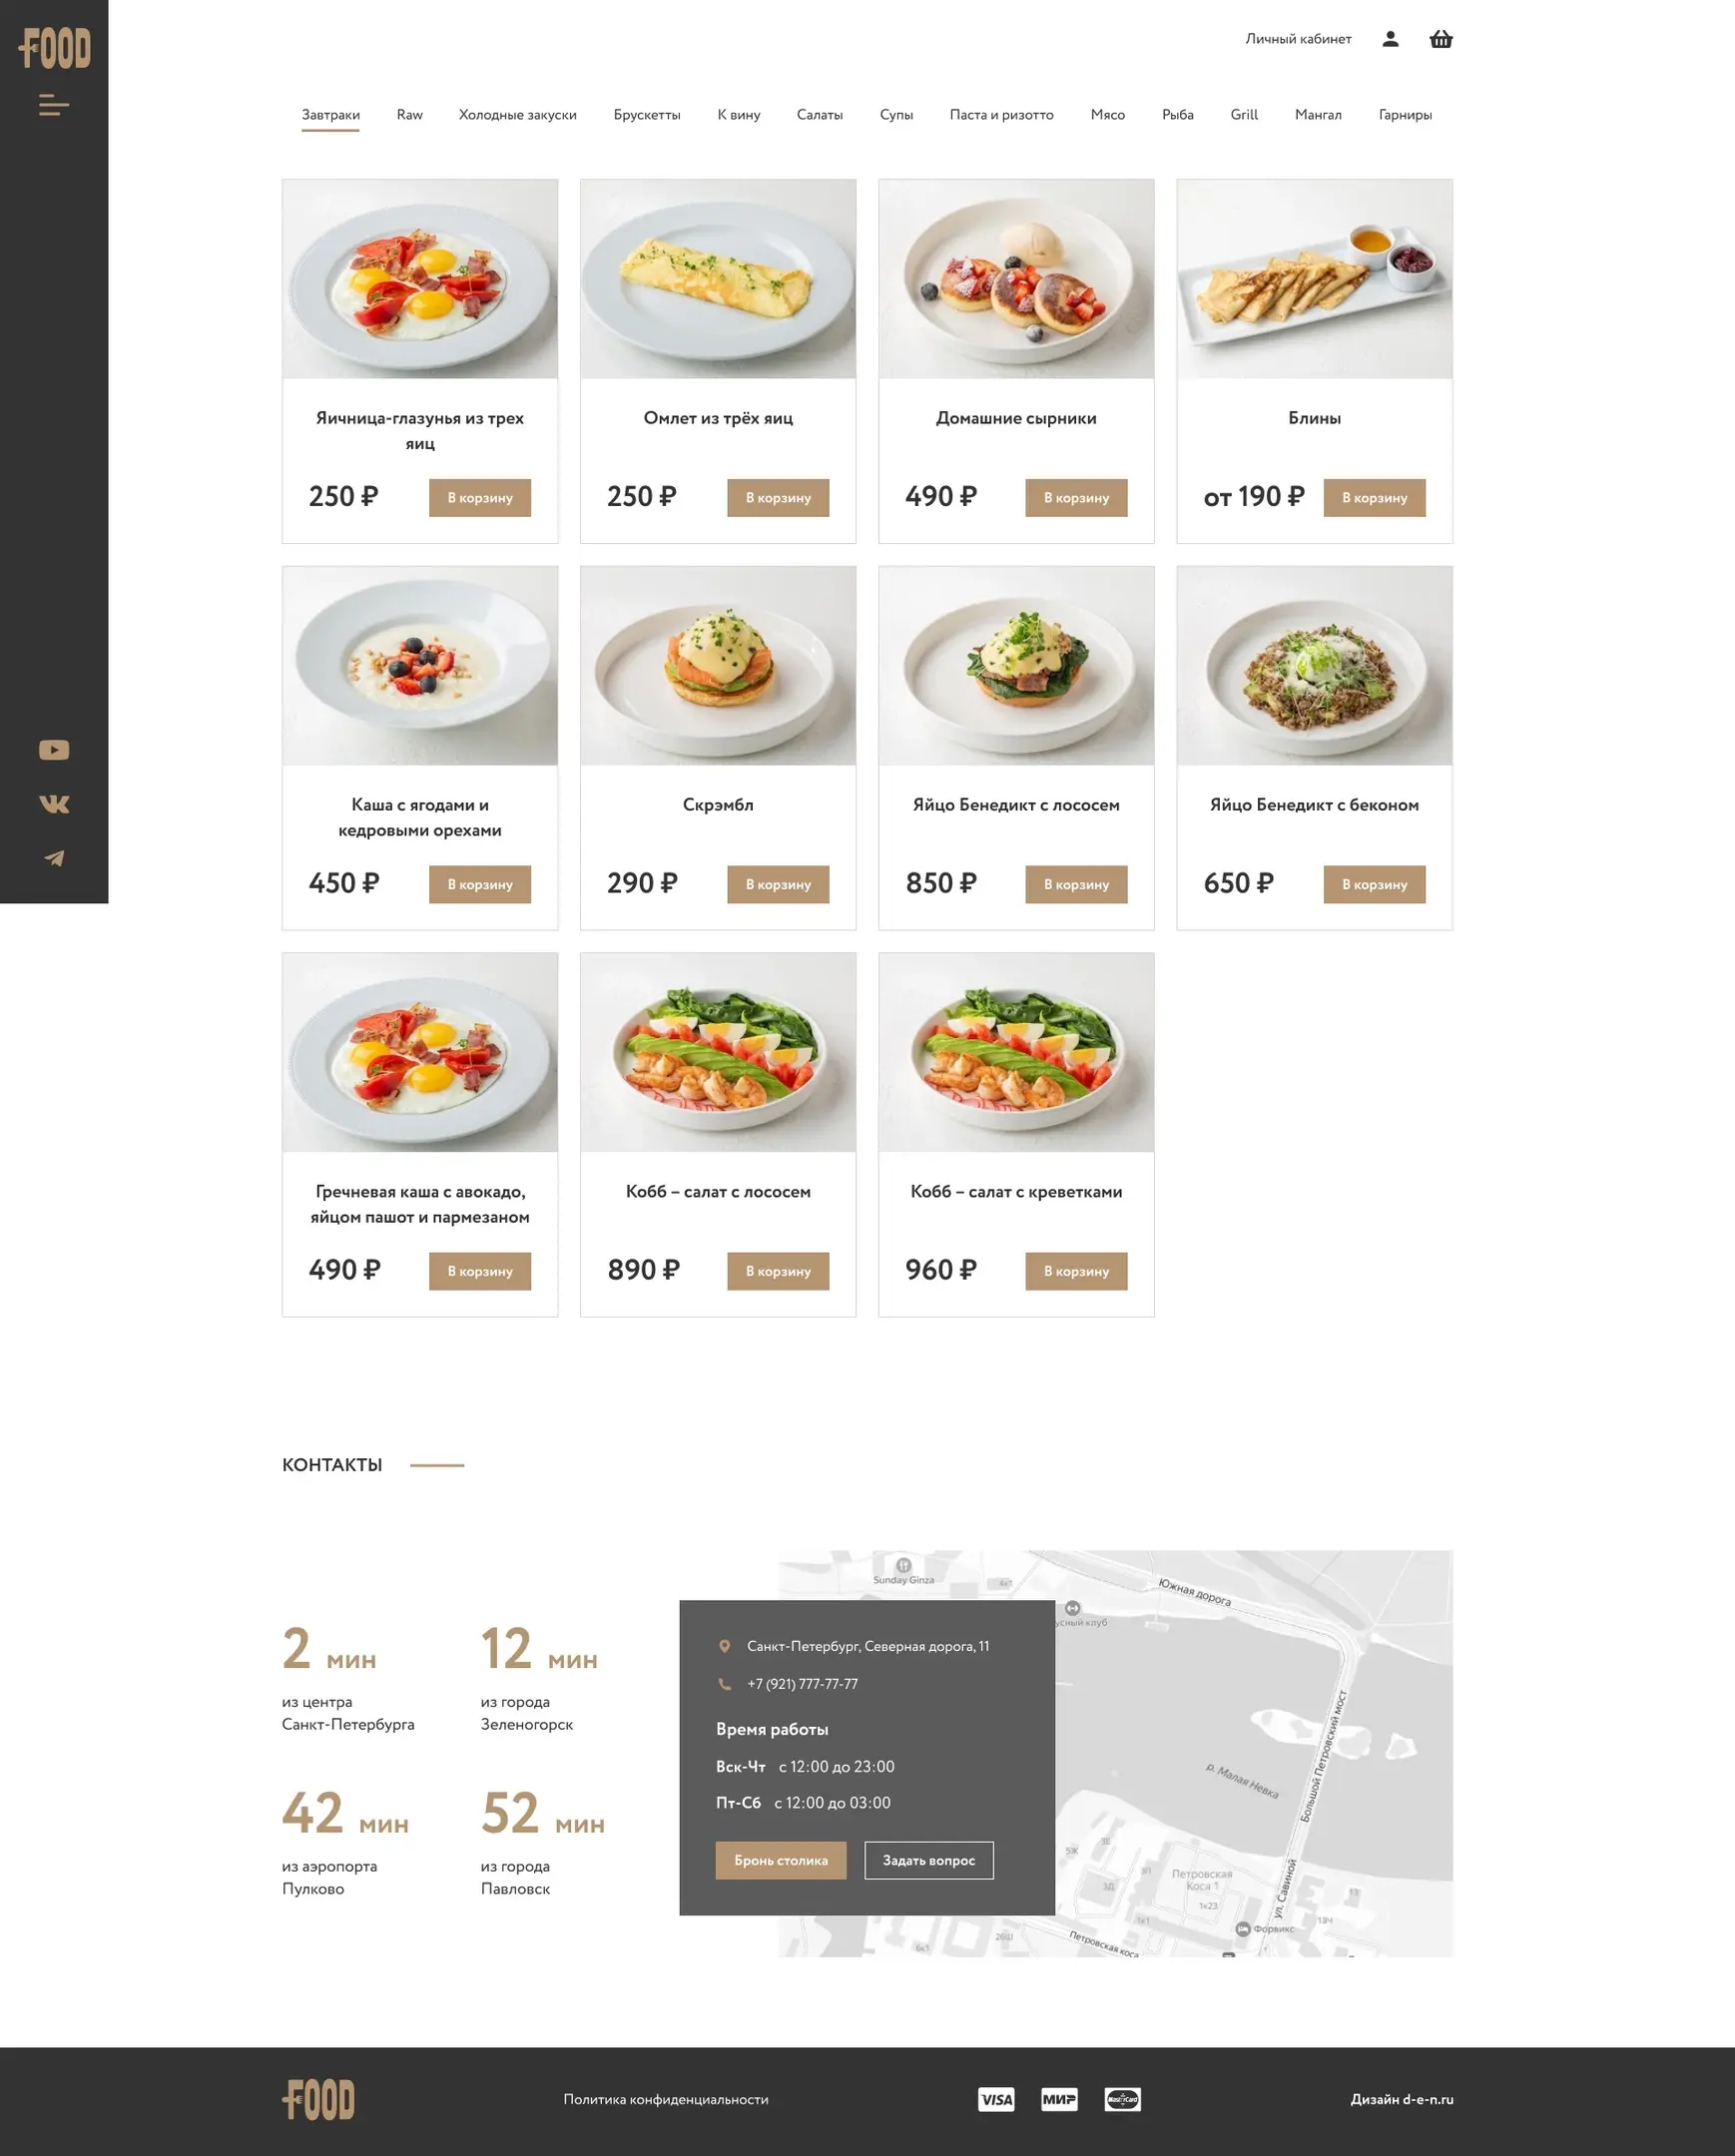 Figma шаблон, Figma templates, шаблона для сайта ресторанного комплекса контентная страница